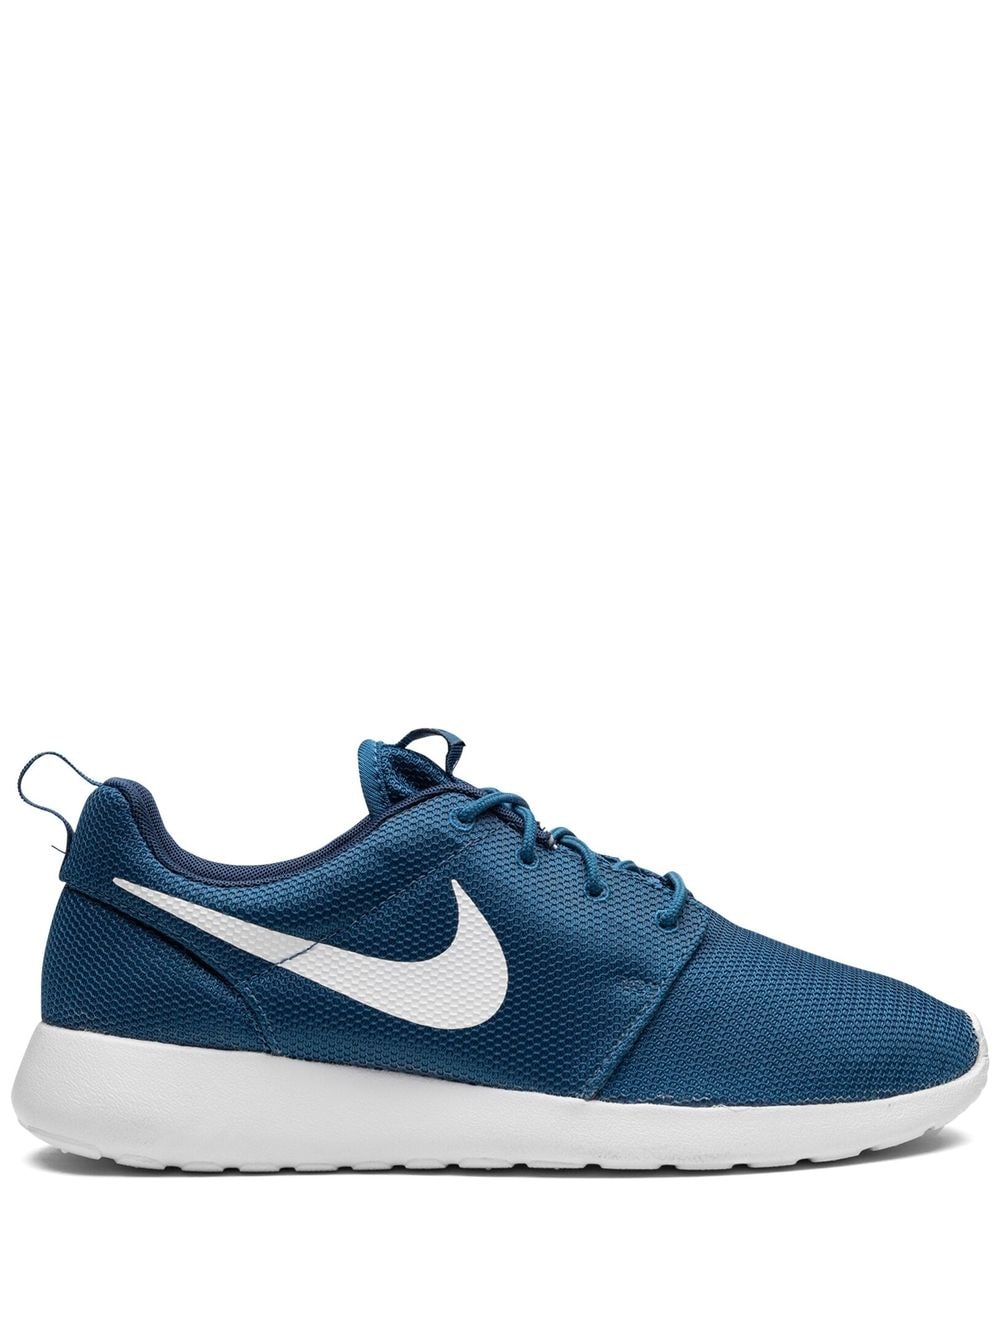 Nike Roshe One Low-top Sneakers In Blue